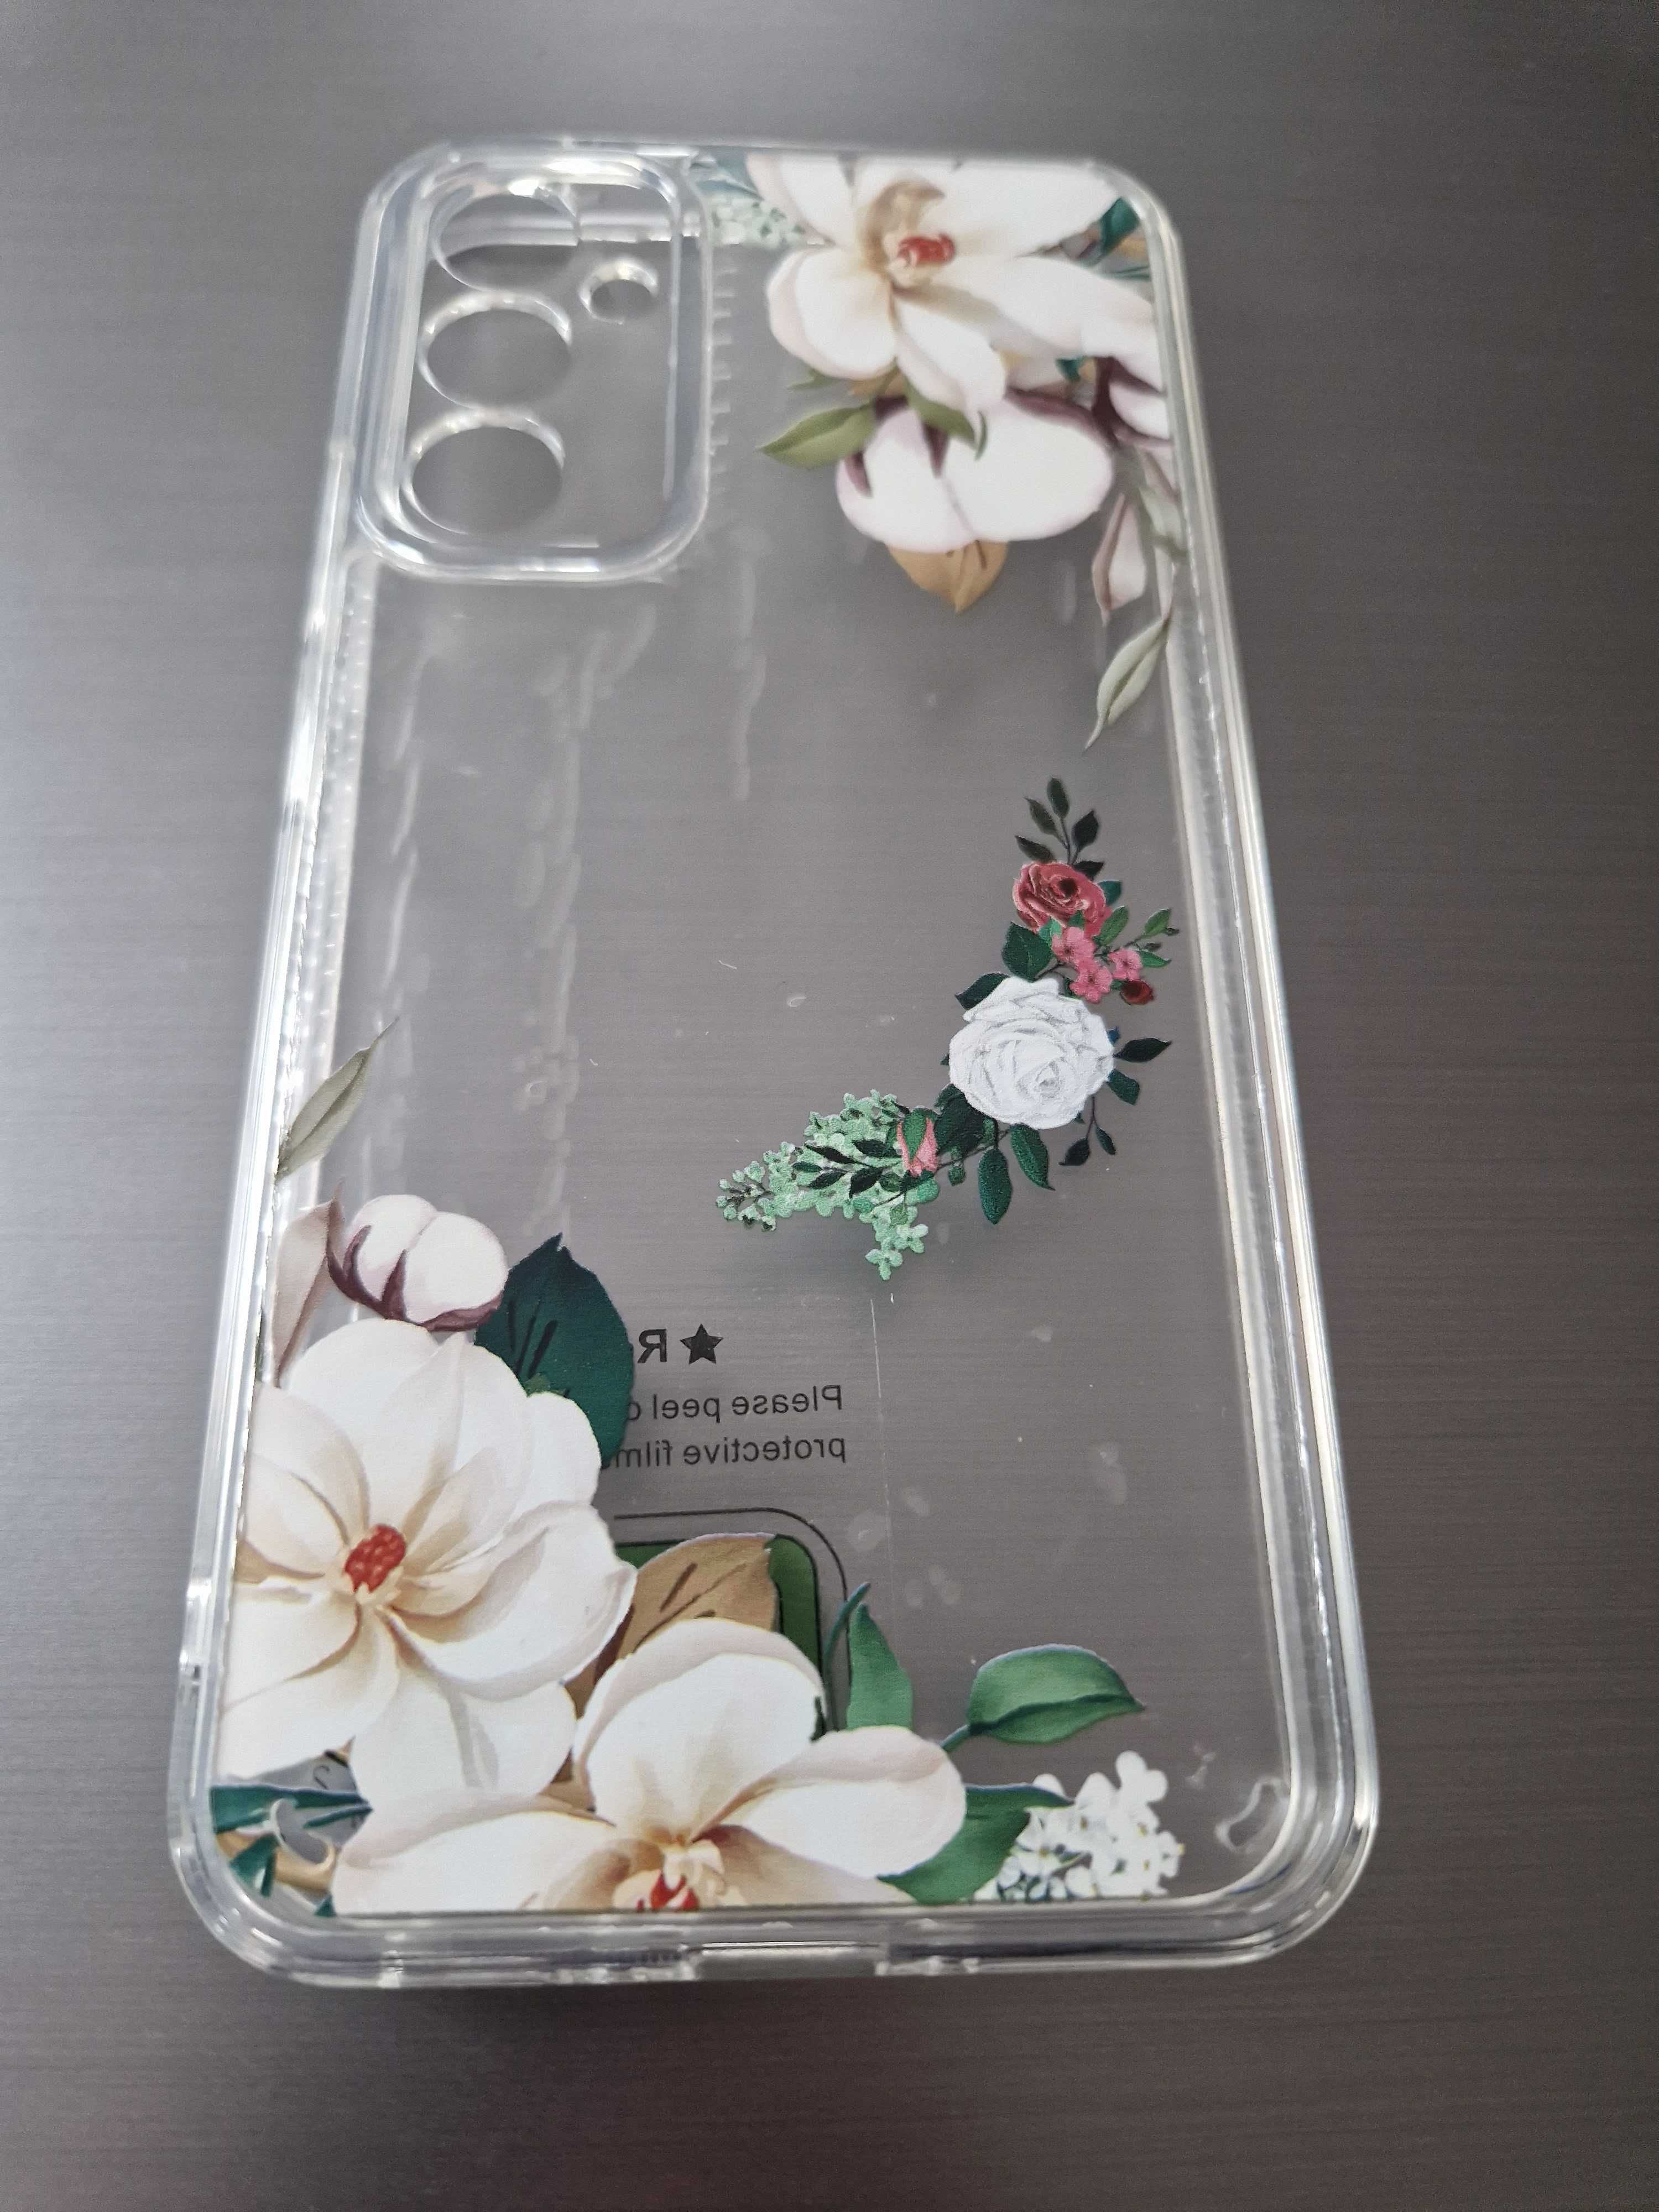 Tel Protect Flower do Samsung Galaxy A34 5G